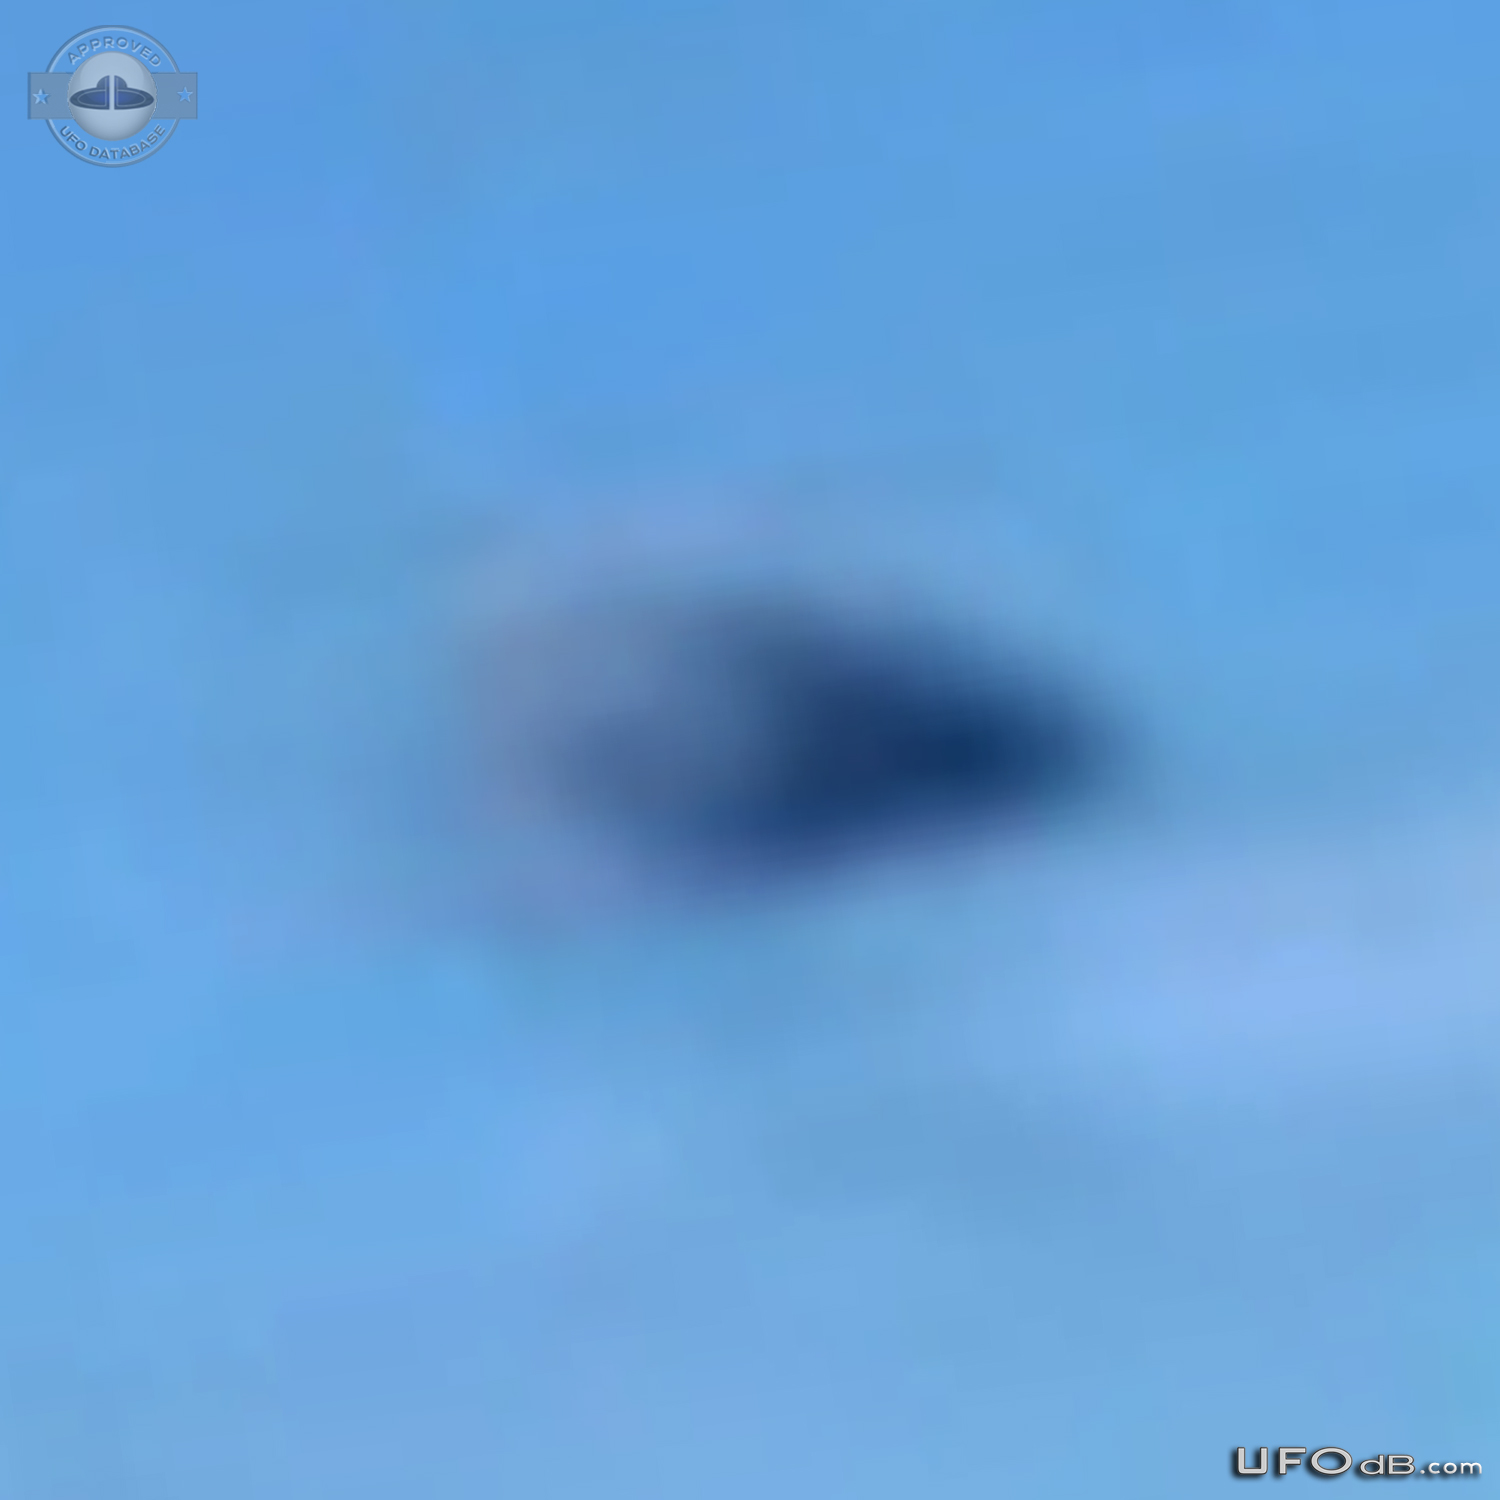 UFO in Raposa Serra do Sol, Roraima in Brazil - July 12 2014 UFO Picture #591-5